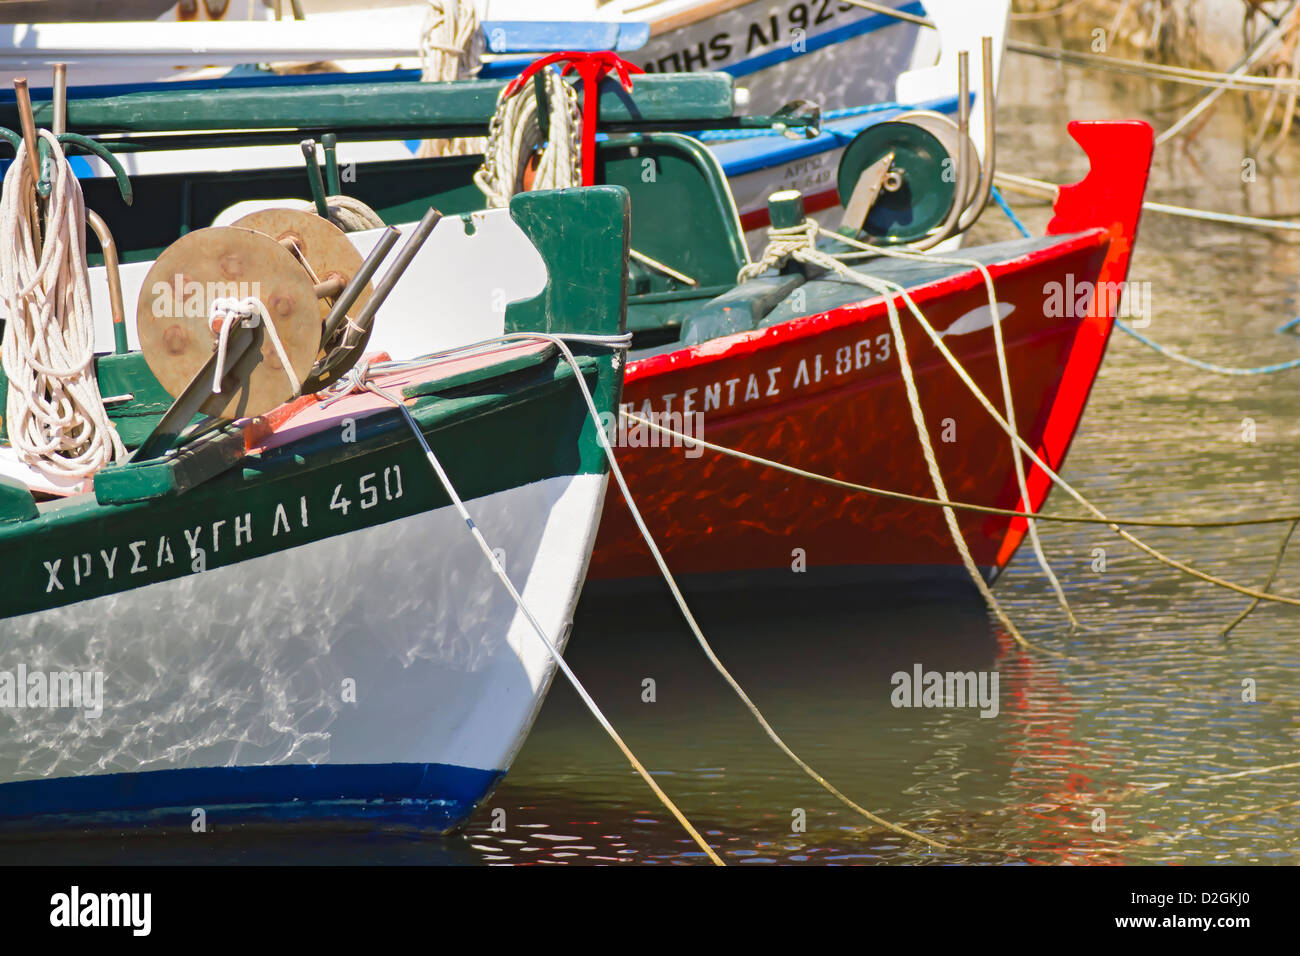 Les bateaux de pêche colorés traditionnels dans la région de harbor, Poros, Kefalonia, Grèce, Europe Banque D'Images